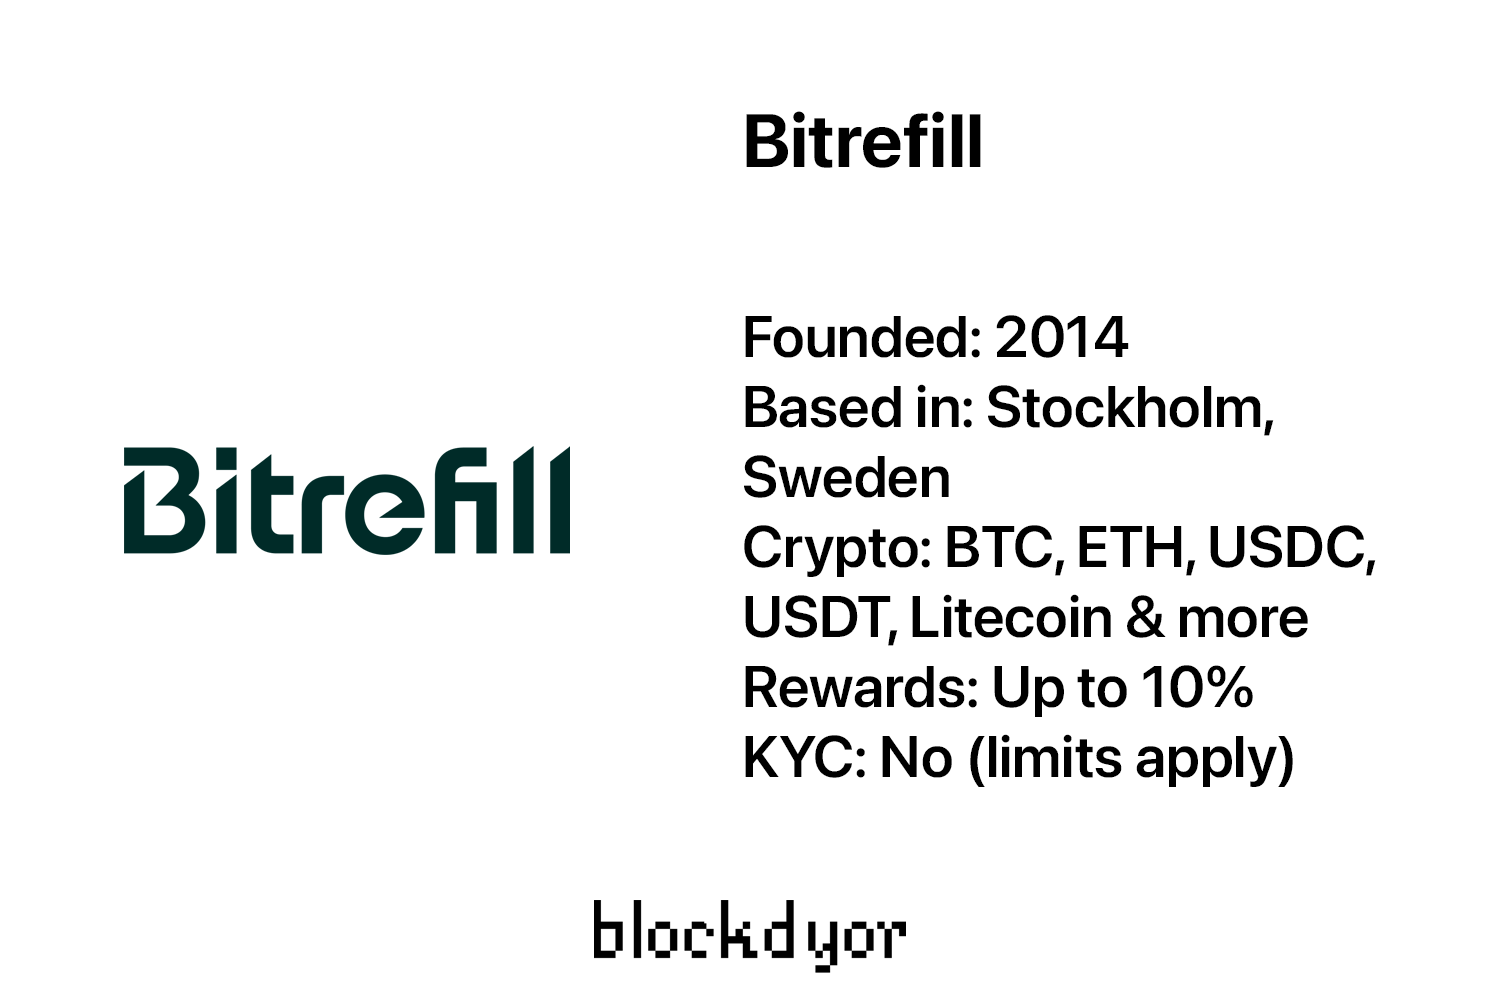 Bitrefill Overview